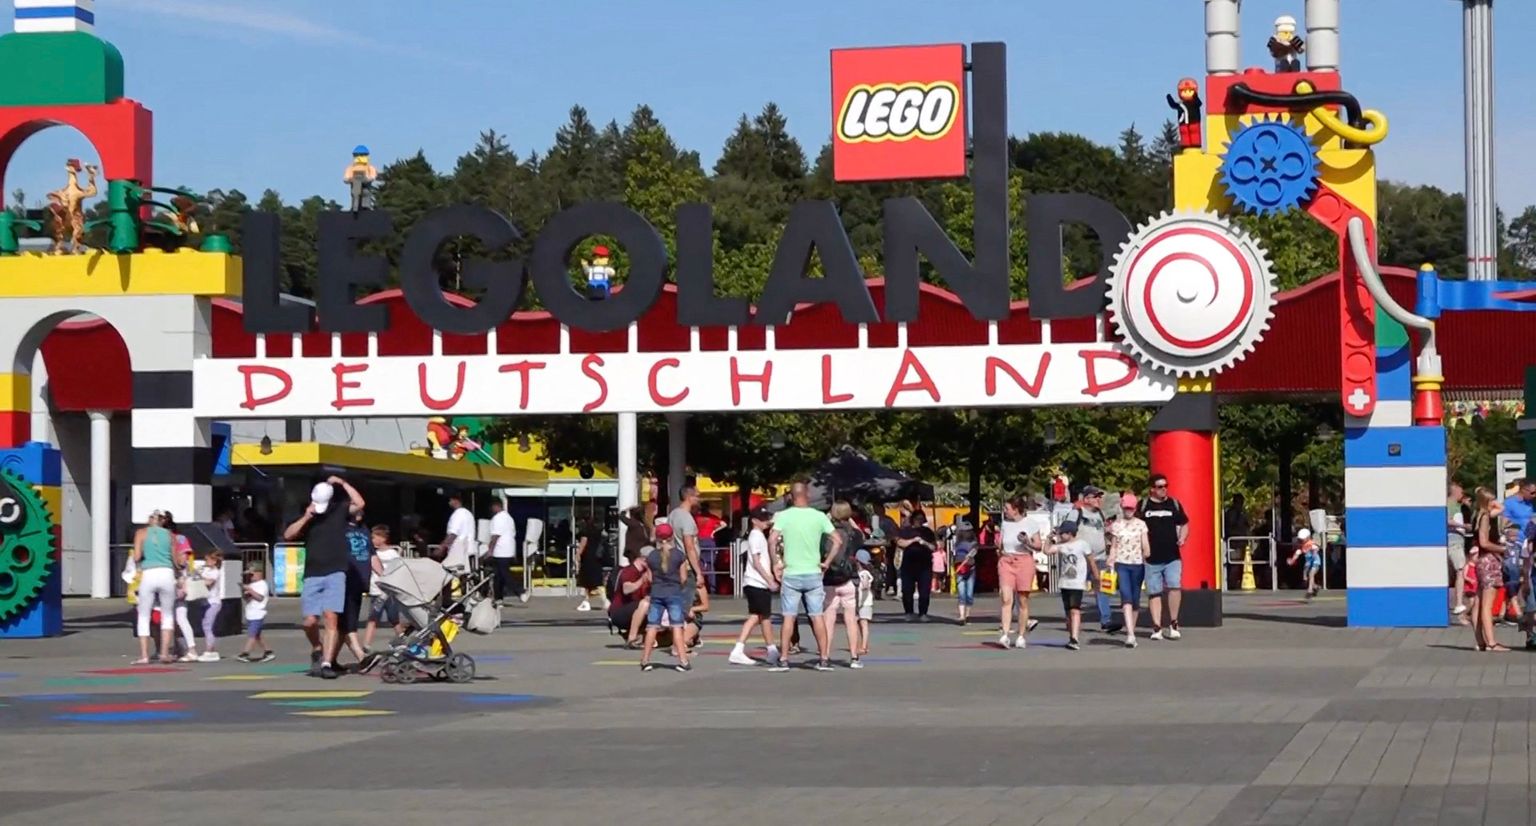 ЧП произошло на американских горках в парке Legoland в Баварии. На аттракционе "Огненный дракон" столкнулись два поезда.